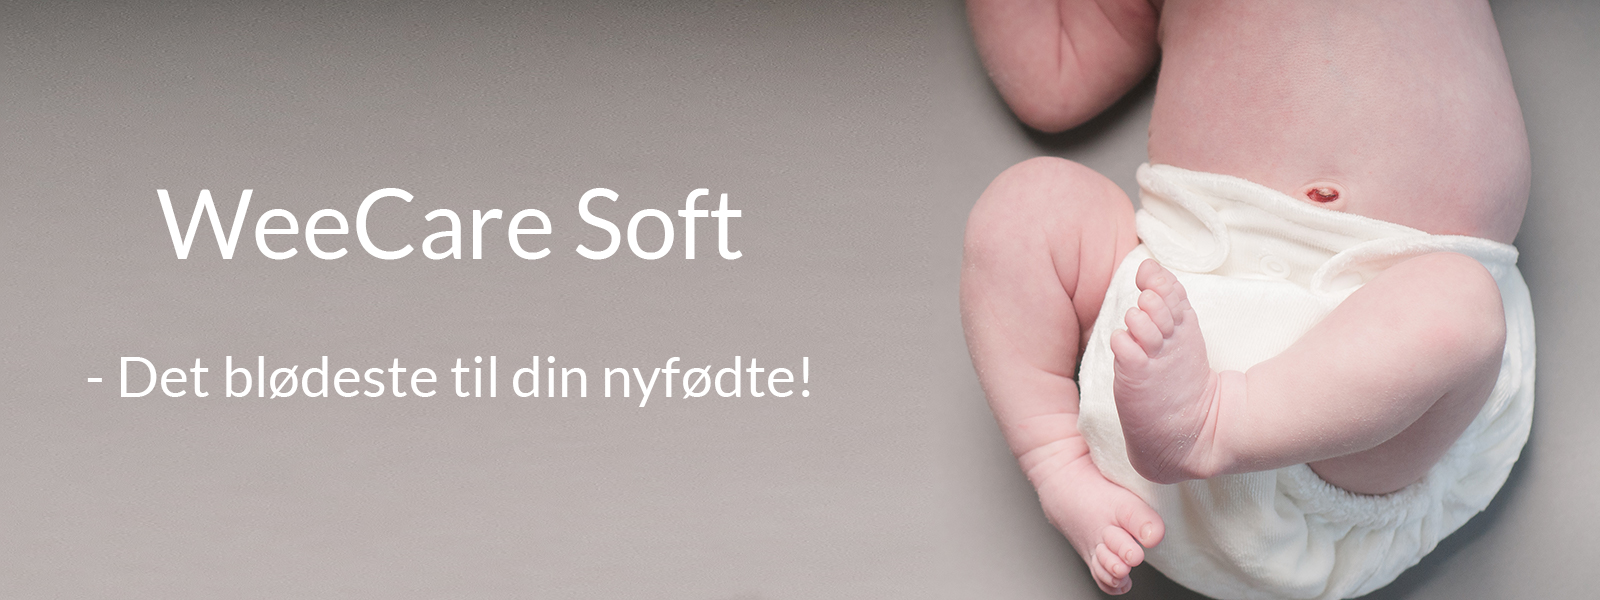 Stofble-til-nyfoedt-WeeCare -Soft